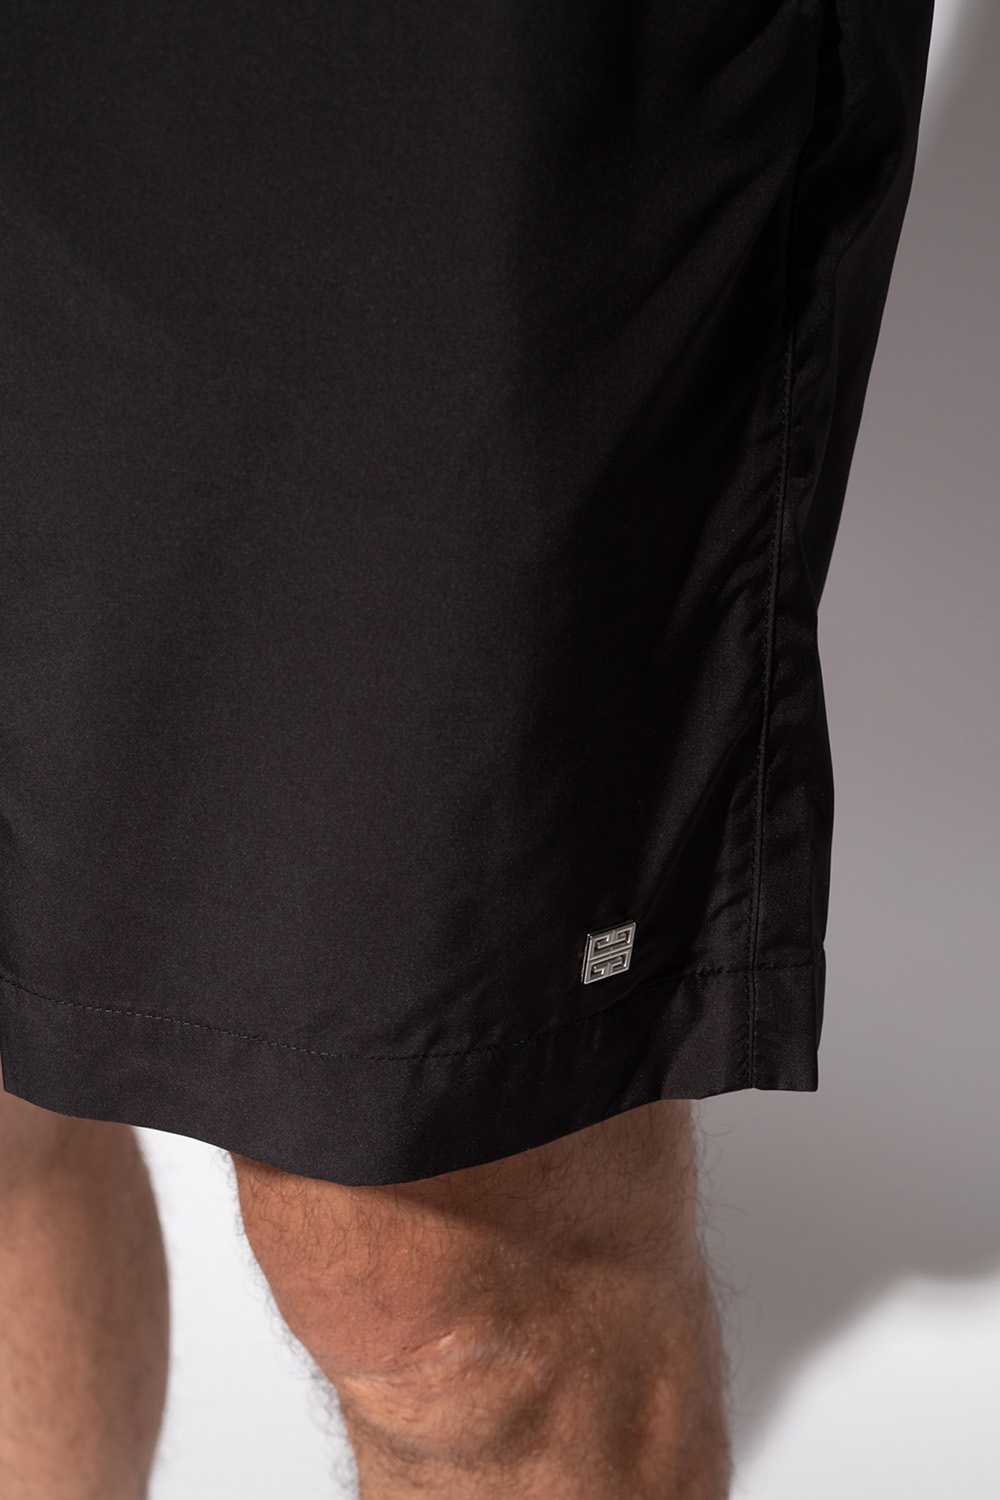 Givenchy Swim shorts with logo